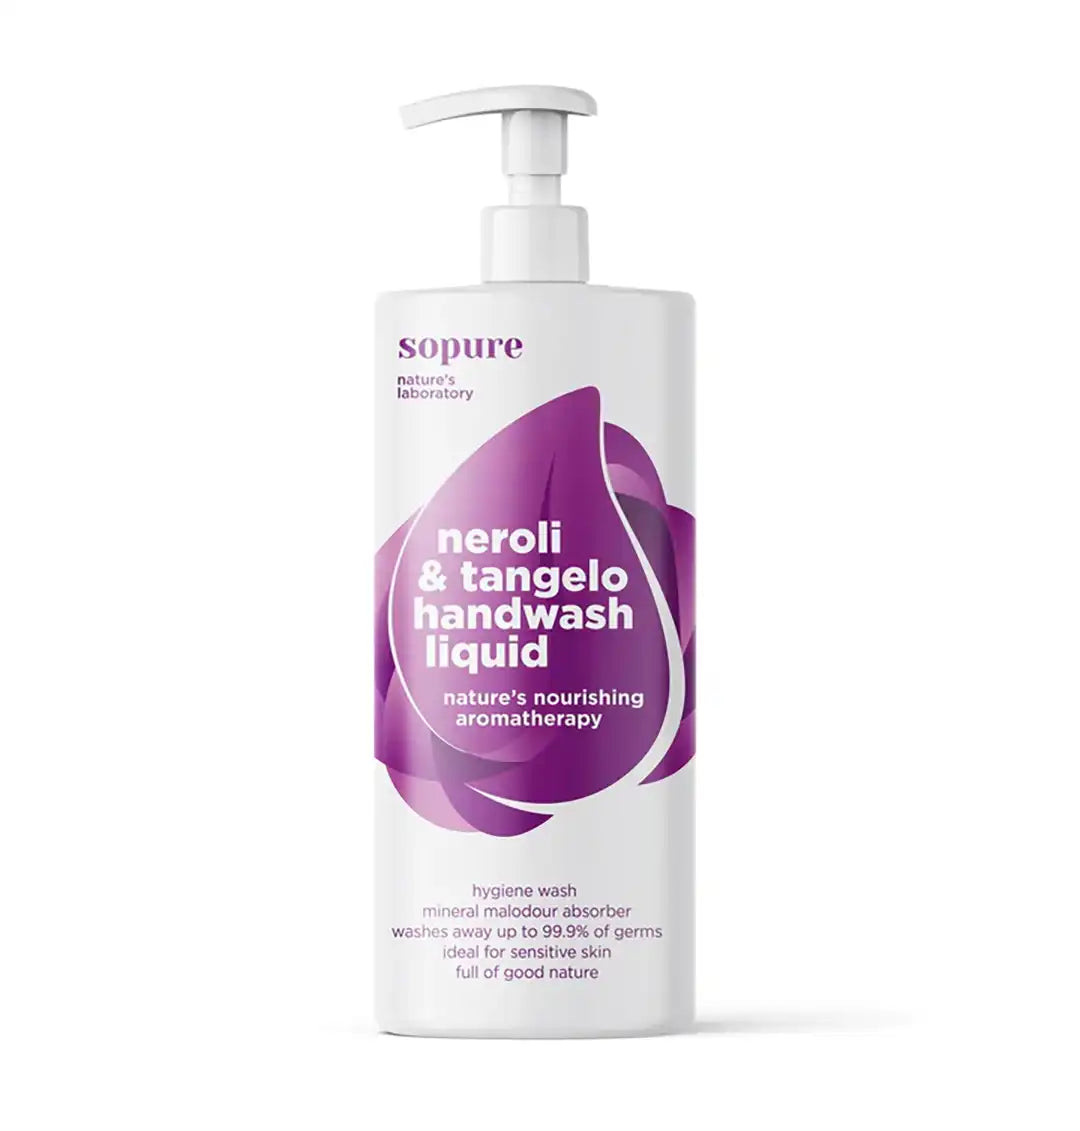 SoPure Neroli & Tangelo Hand Wash Liquid Nature's nourishing aromatherapy, 500ml